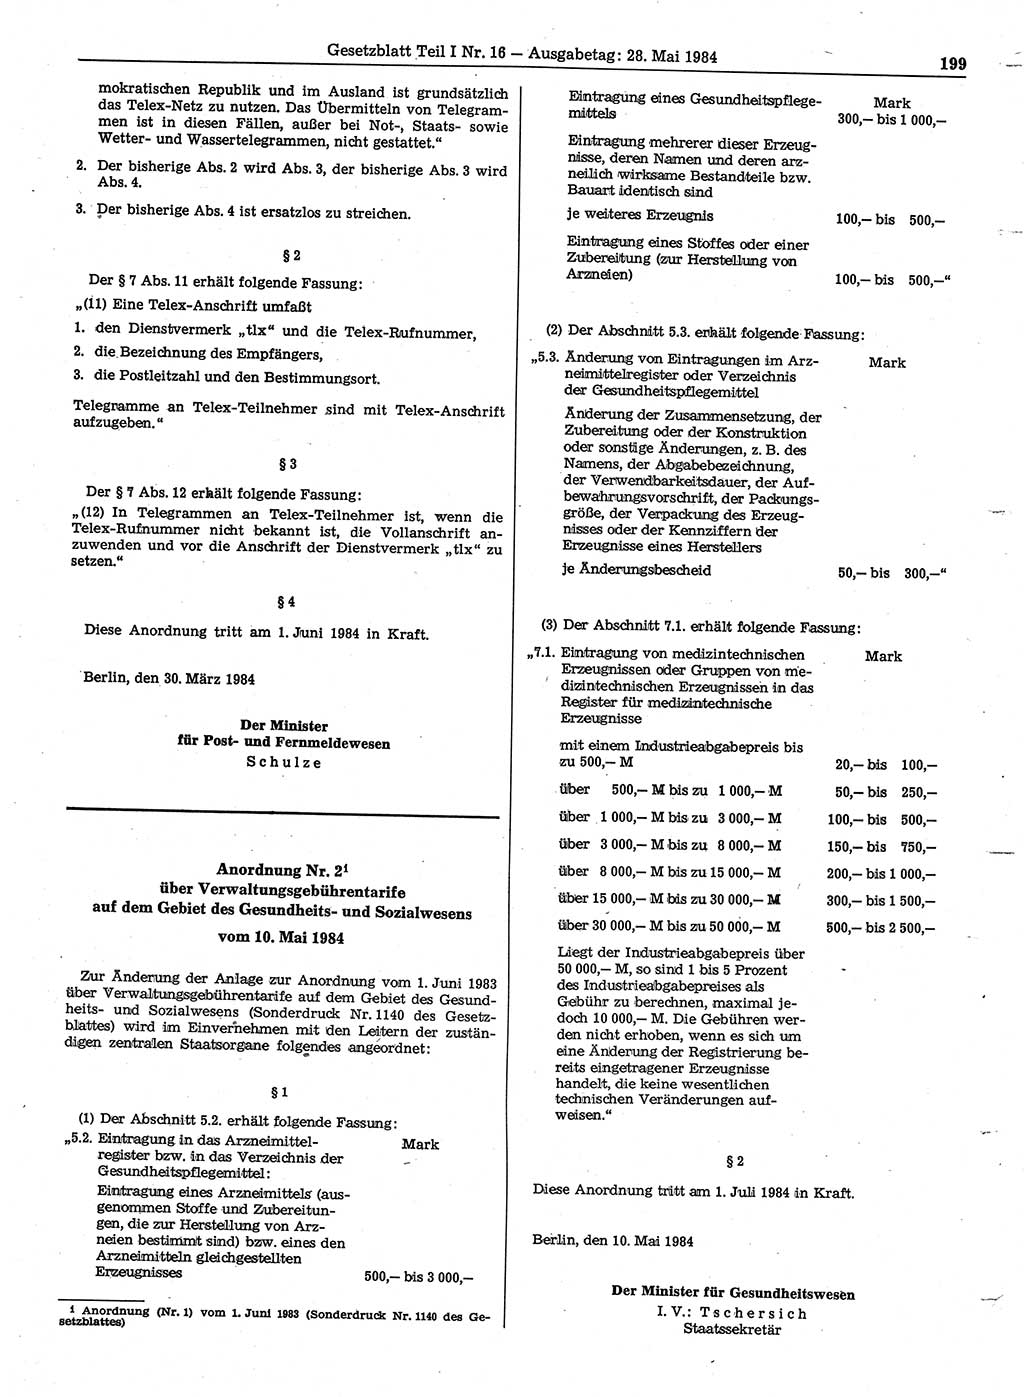 Gesetzblatt (GBl.) der Deutschen Demokratischen Republik (DDR) Teil Ⅰ 1984, Seite 199 (GBl. DDR Ⅰ 1984, S. 199)